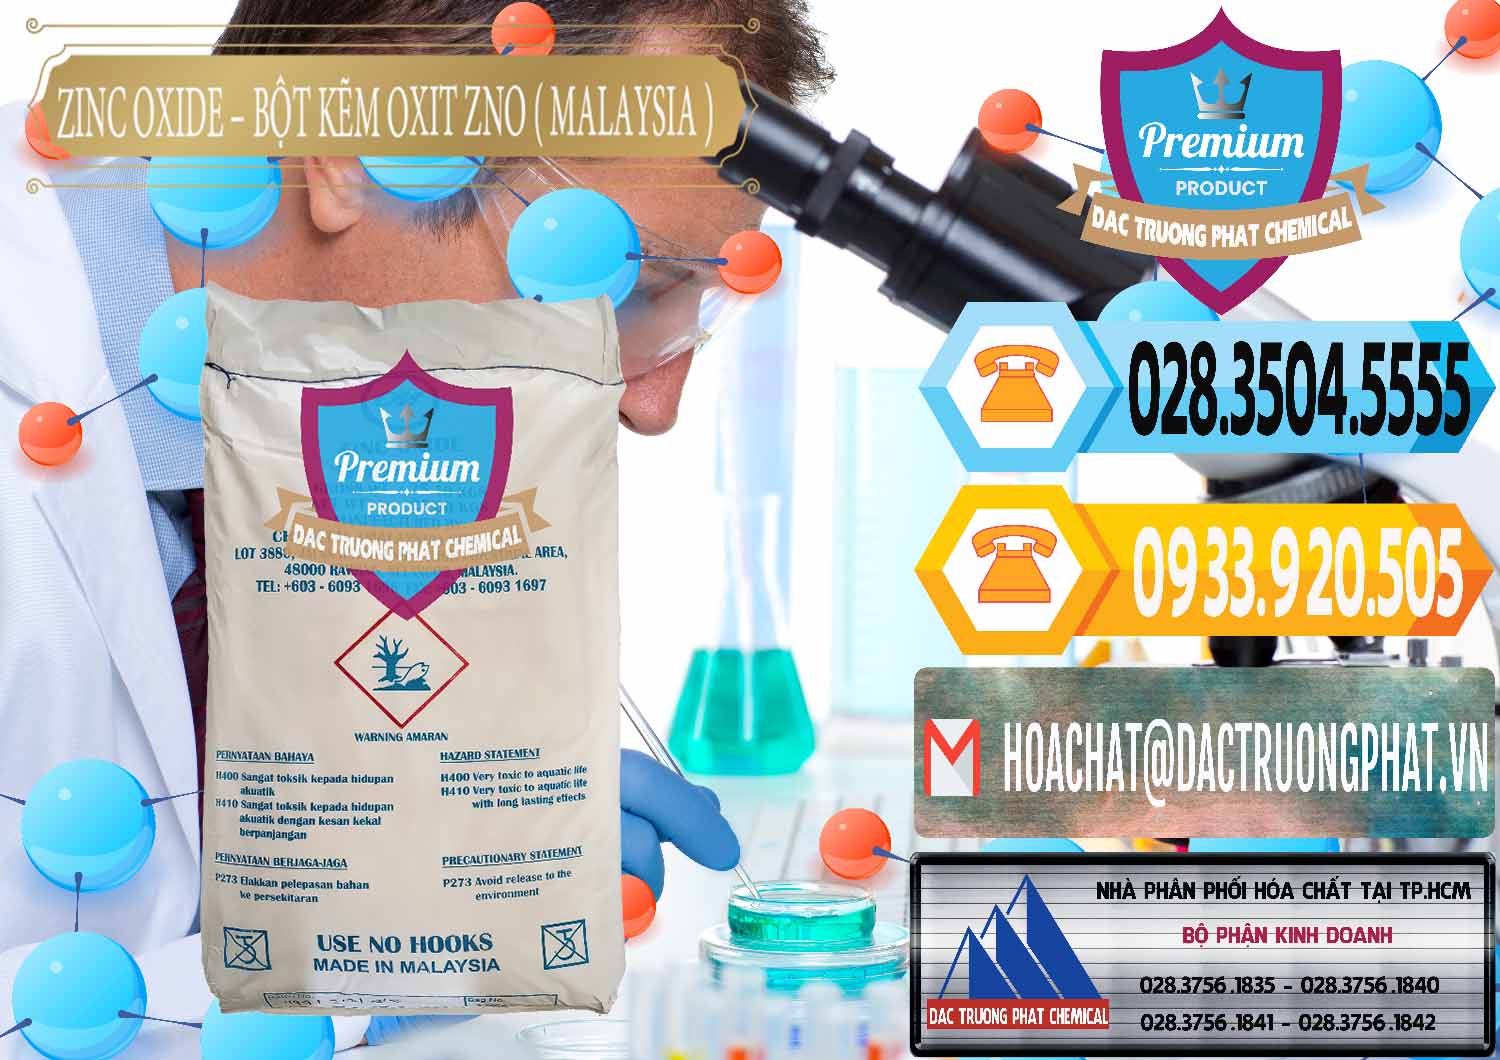 Đơn vị chuyên bán - phân phối Zinc Oxide - Bột Kẽm Oxit ZNO Malaysia - 0179 - Nhà cung cấp & phân phối hóa chất tại TP.HCM - hoachattayrua.net